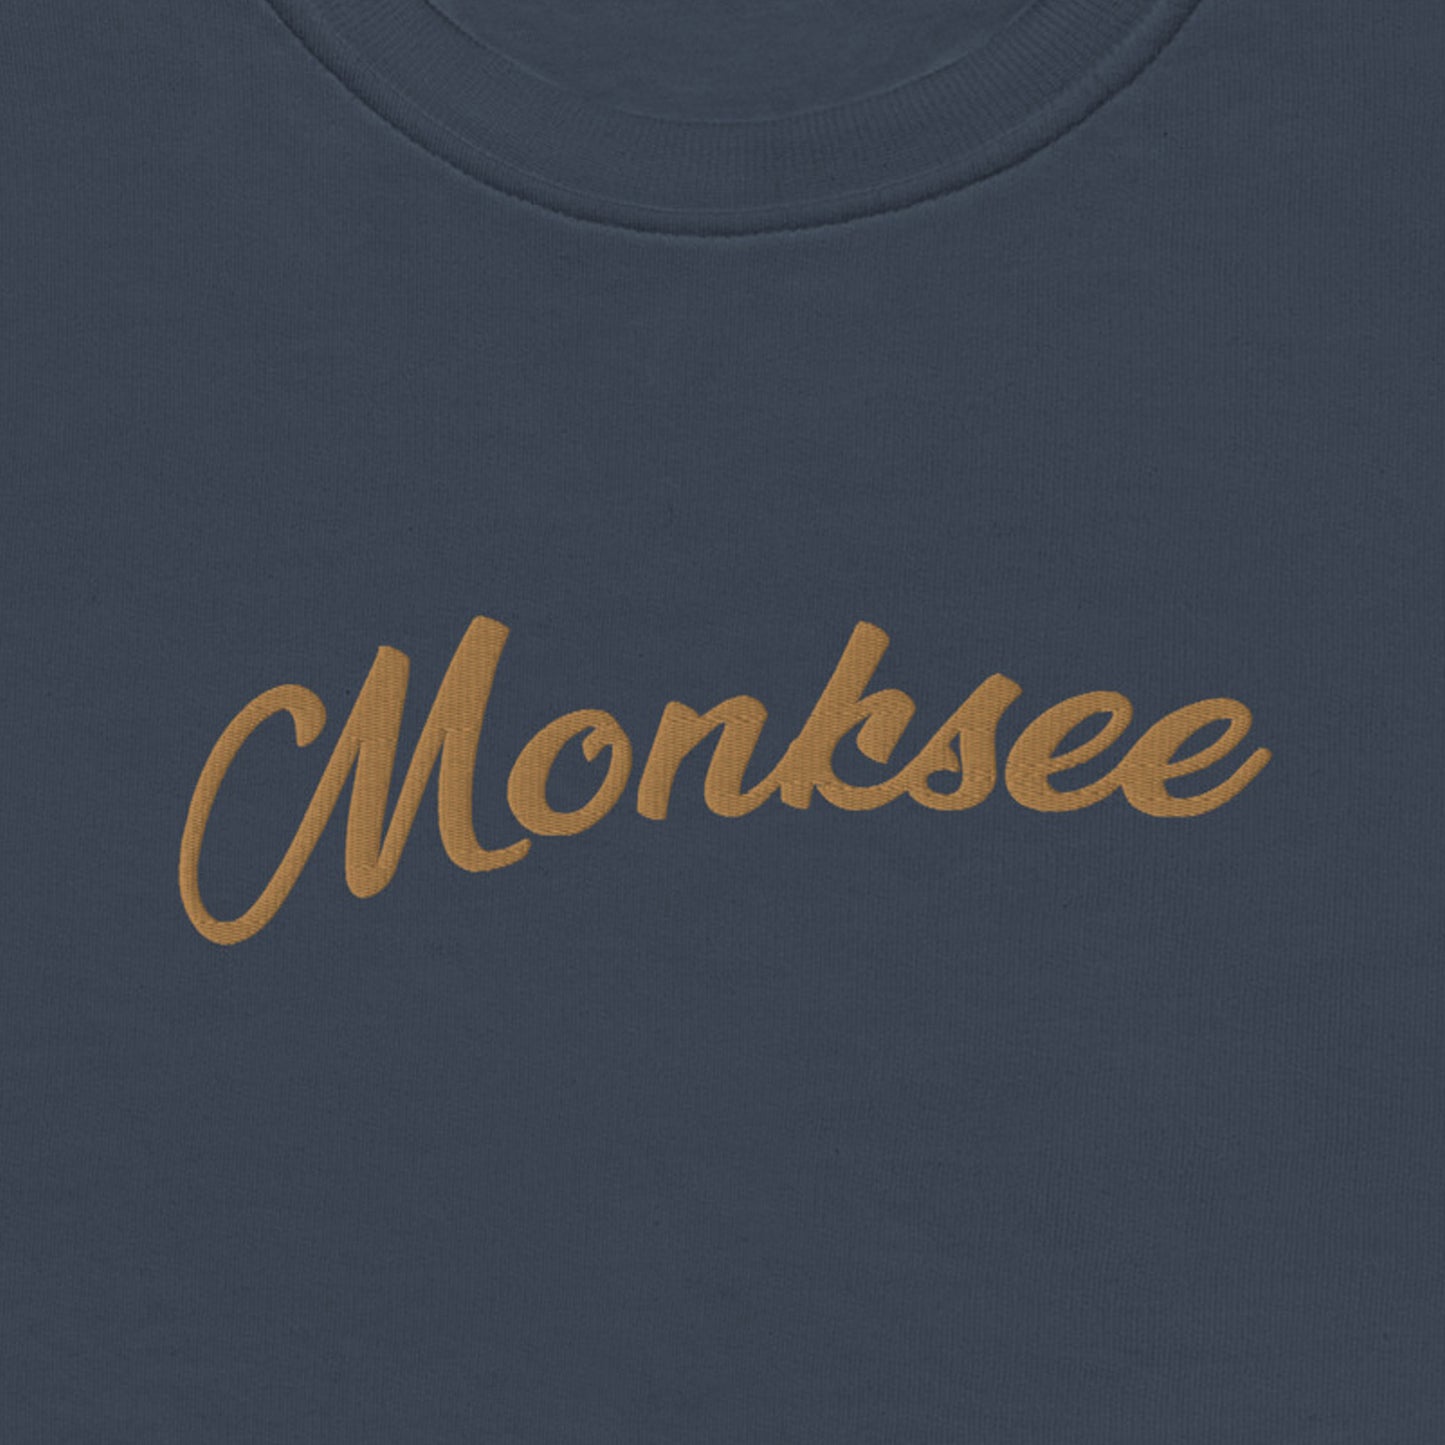 Goldie - Organic Monksee sweatshirt